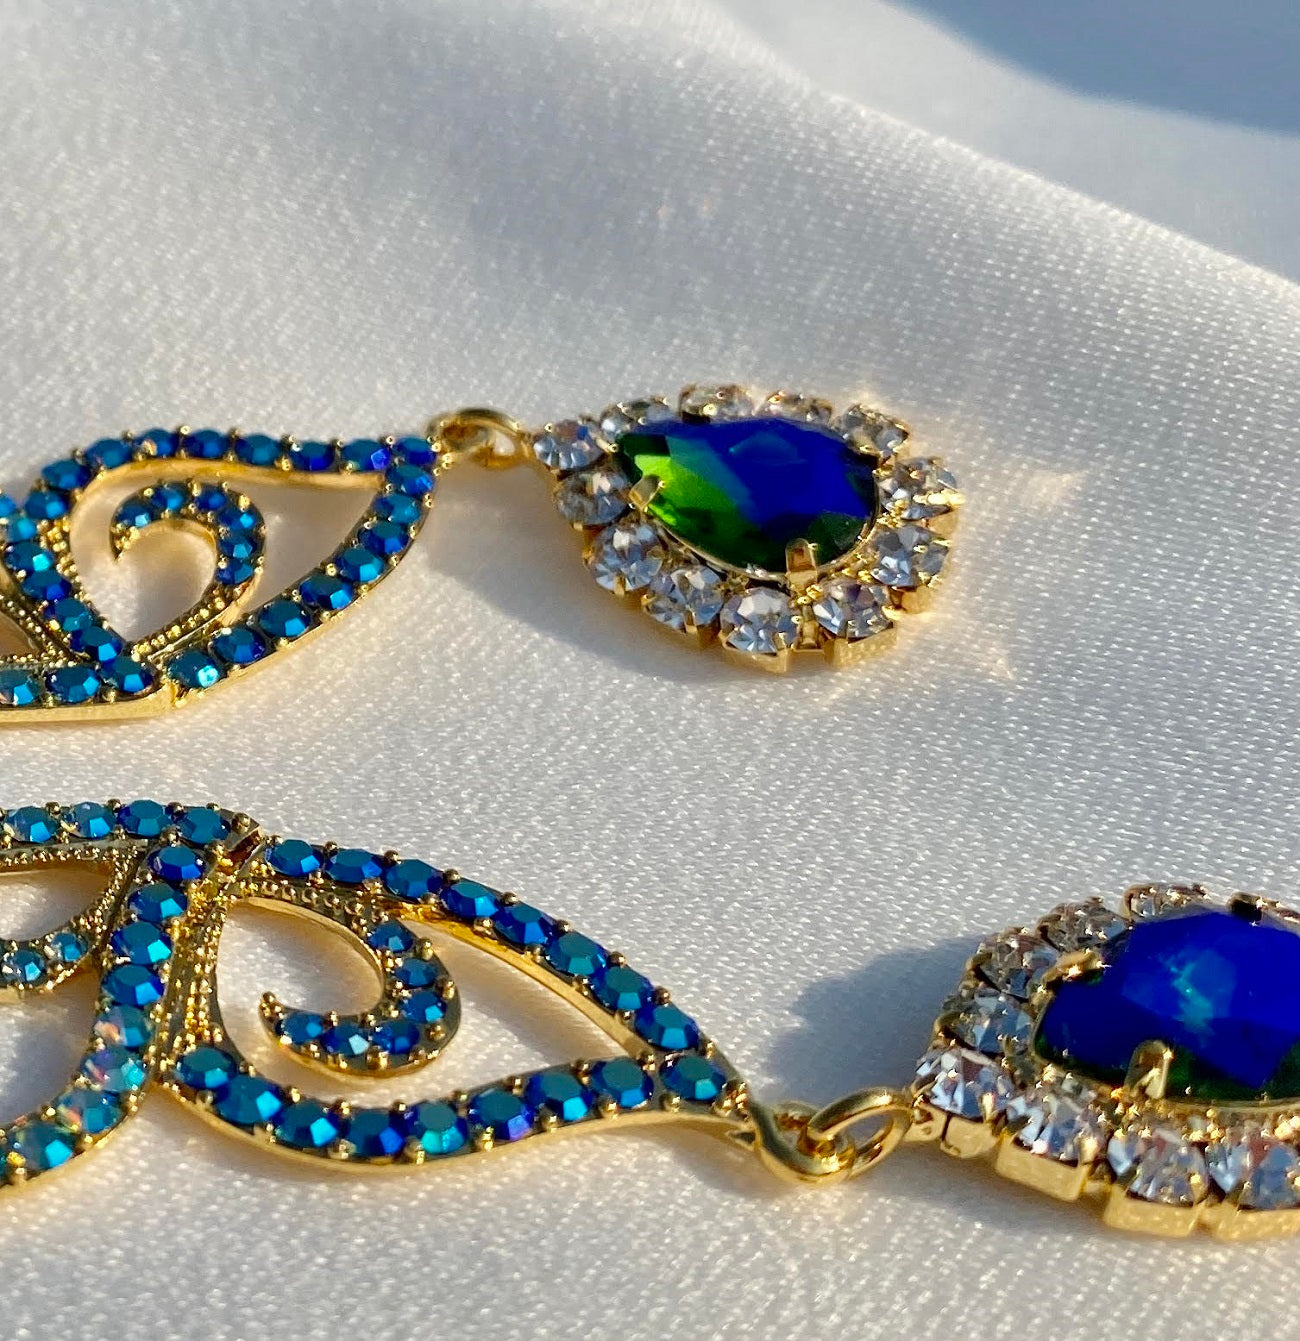 18K Gold filled half butterfly earrings in Blue